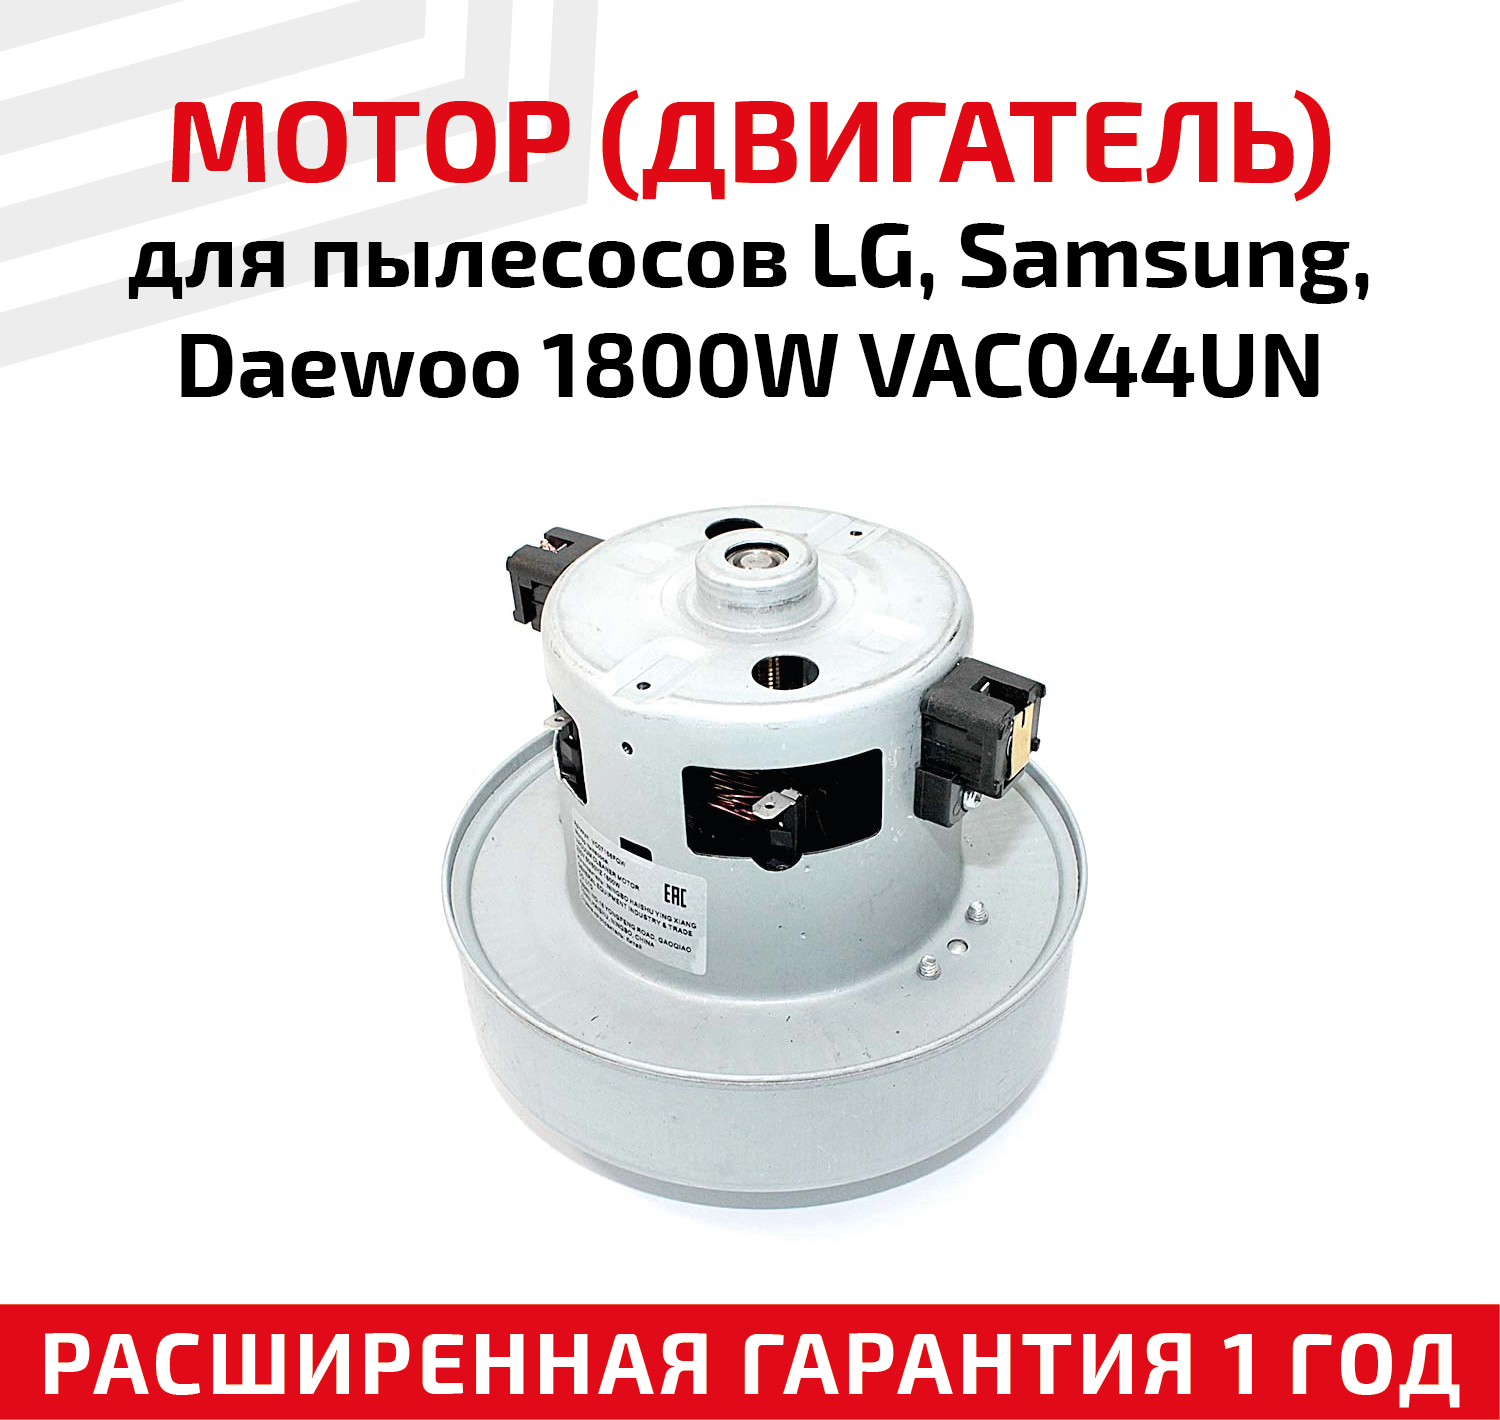 Мотор (двигатель) для пылесоса LG, Samsung, Daewoo 1800Вт, VAC044UN